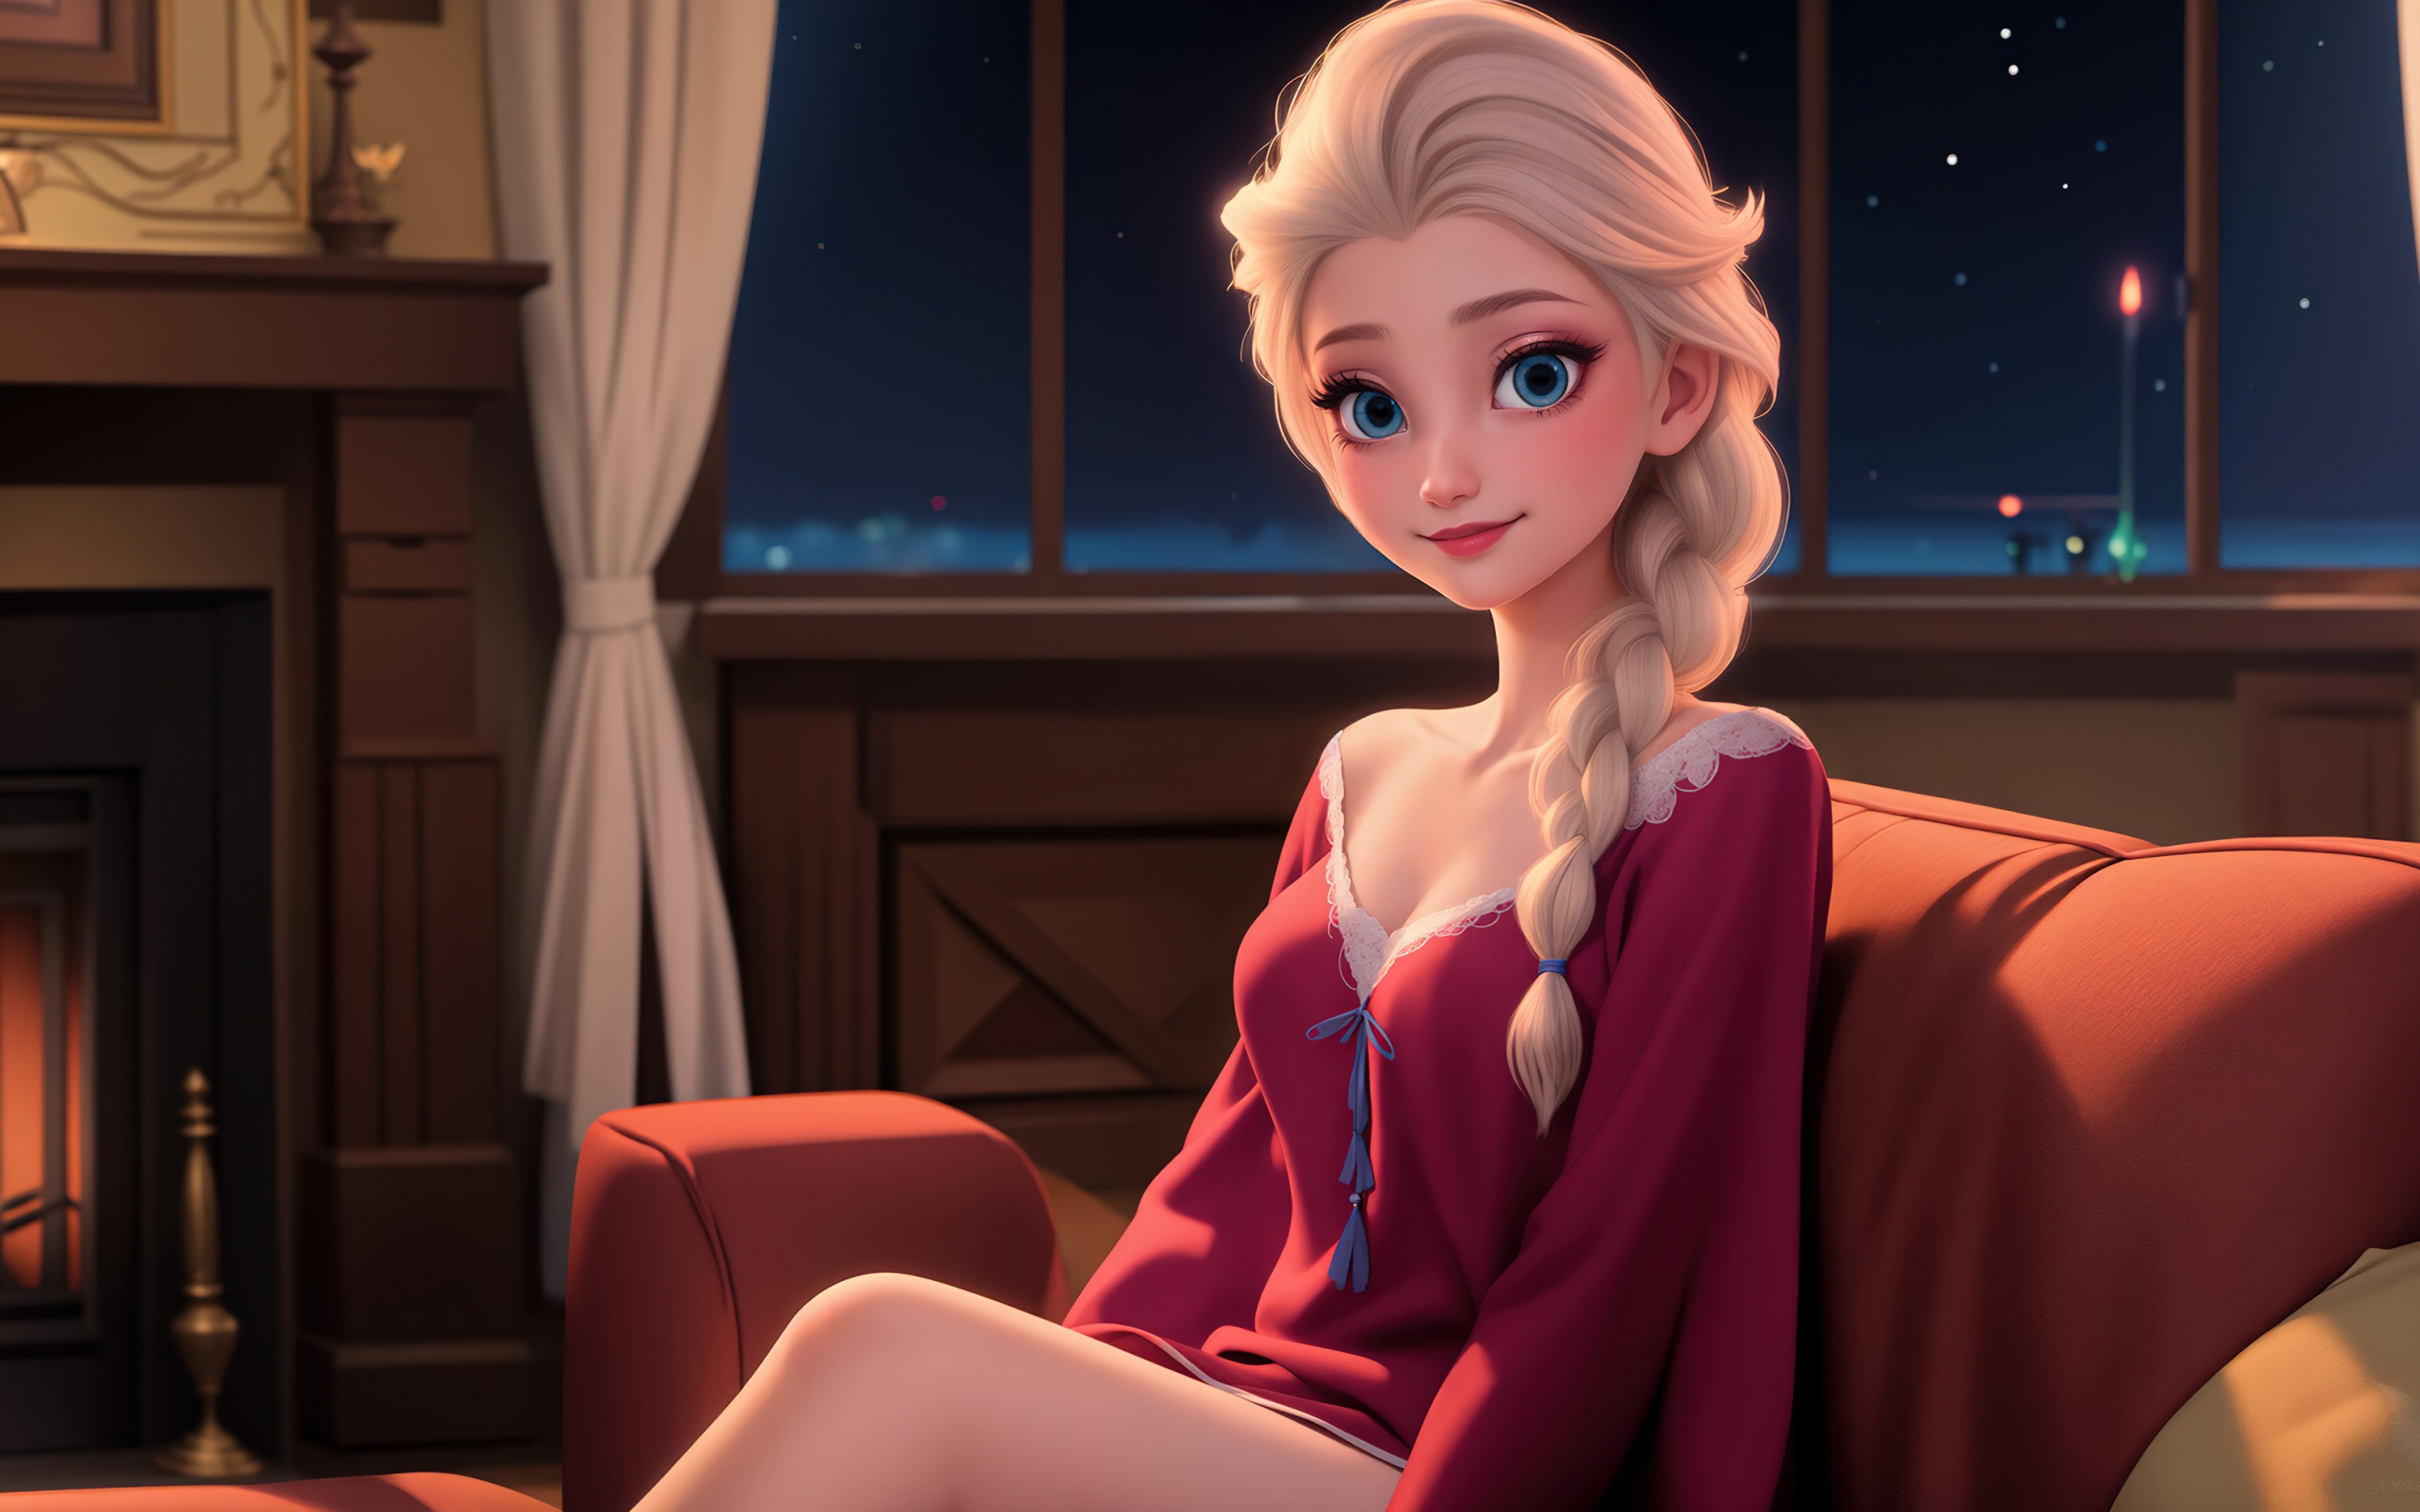 Cute Disney Princess Elsa Ai Art 4k Wallpaper